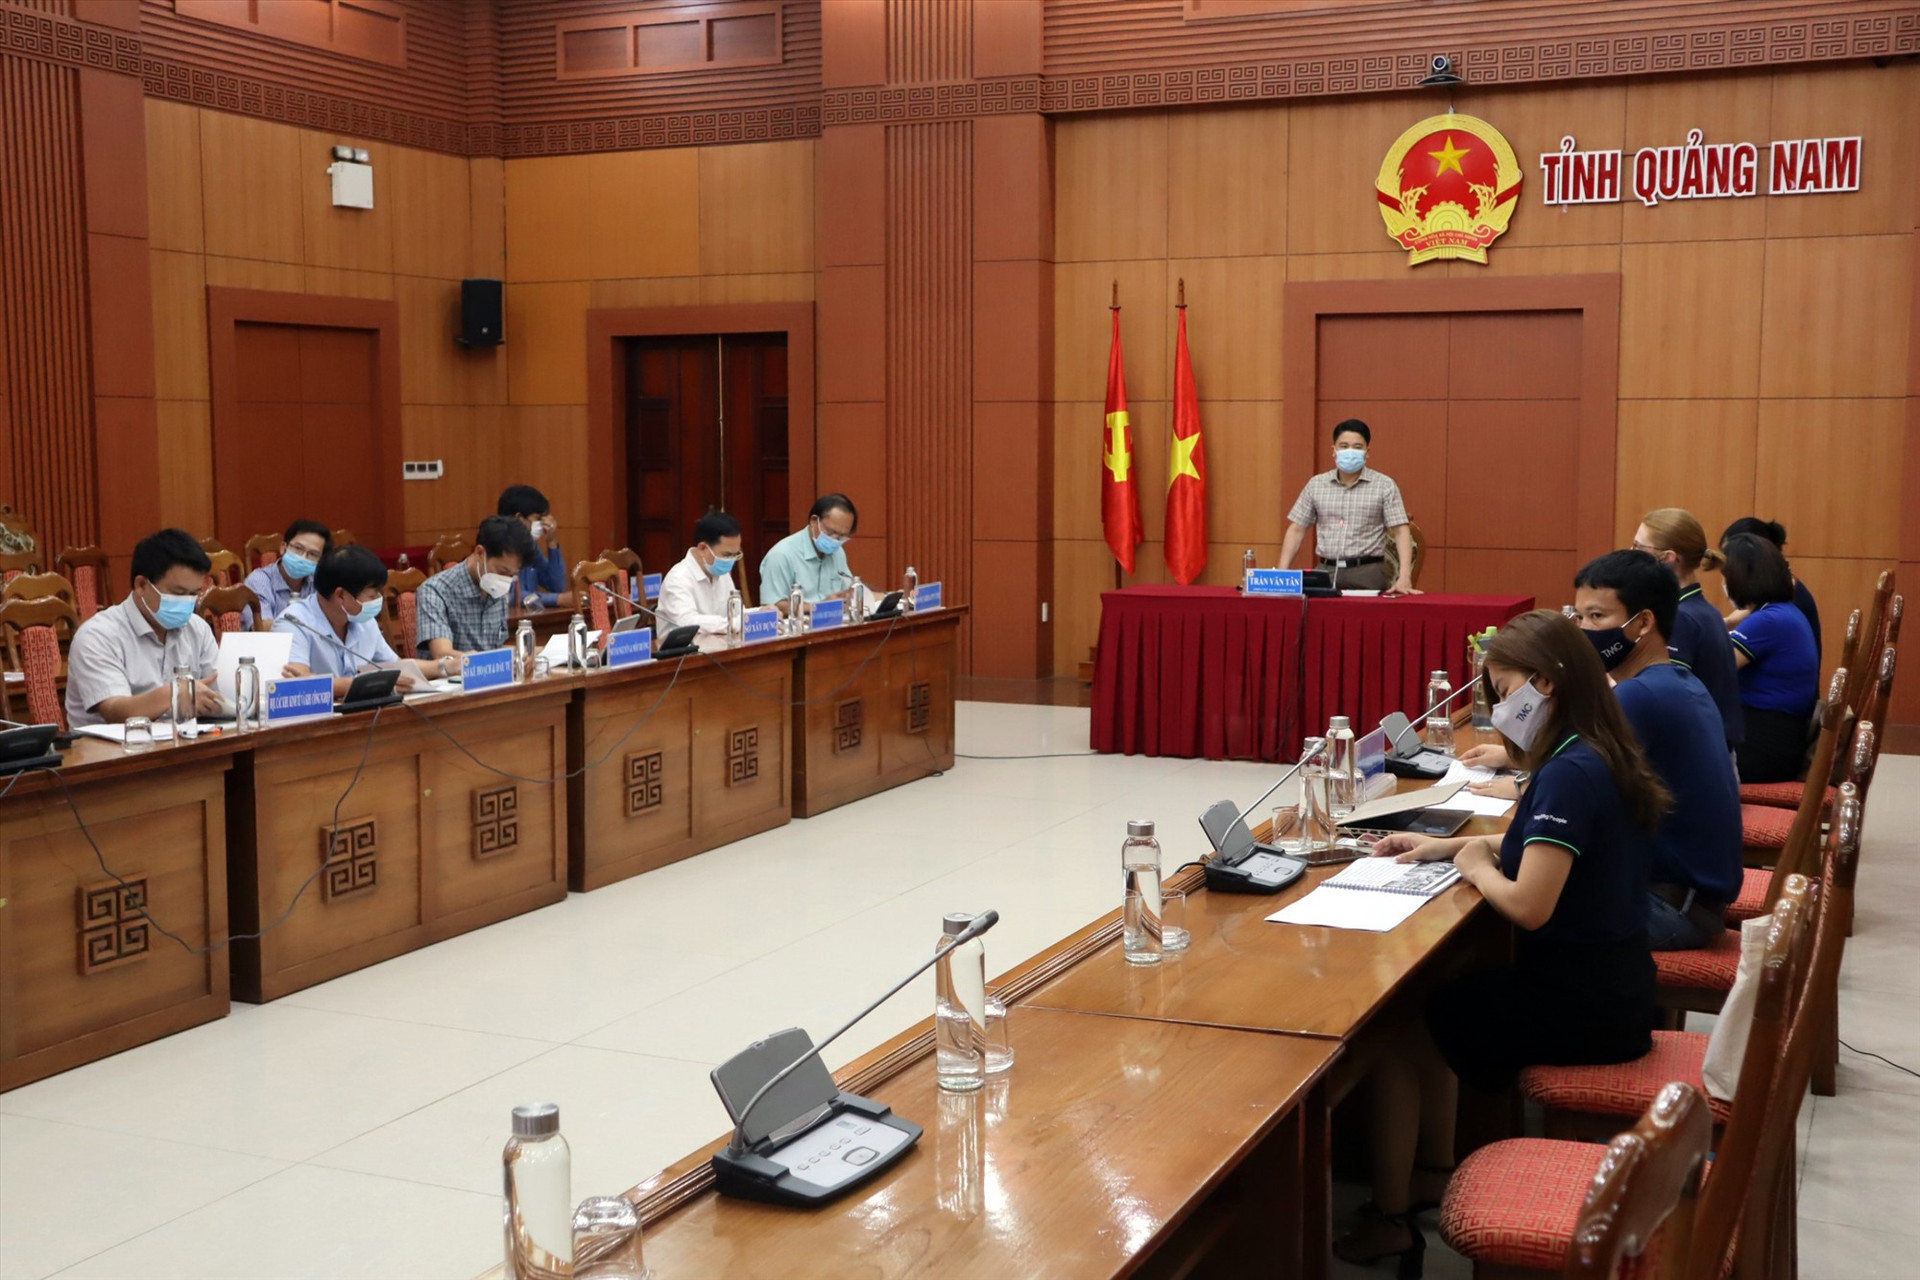 Phó Chủ tịch UBND tỉnh Trần Văn Tân chủ trì buổi làm việc trực tuyến. Ảnh: Q.T